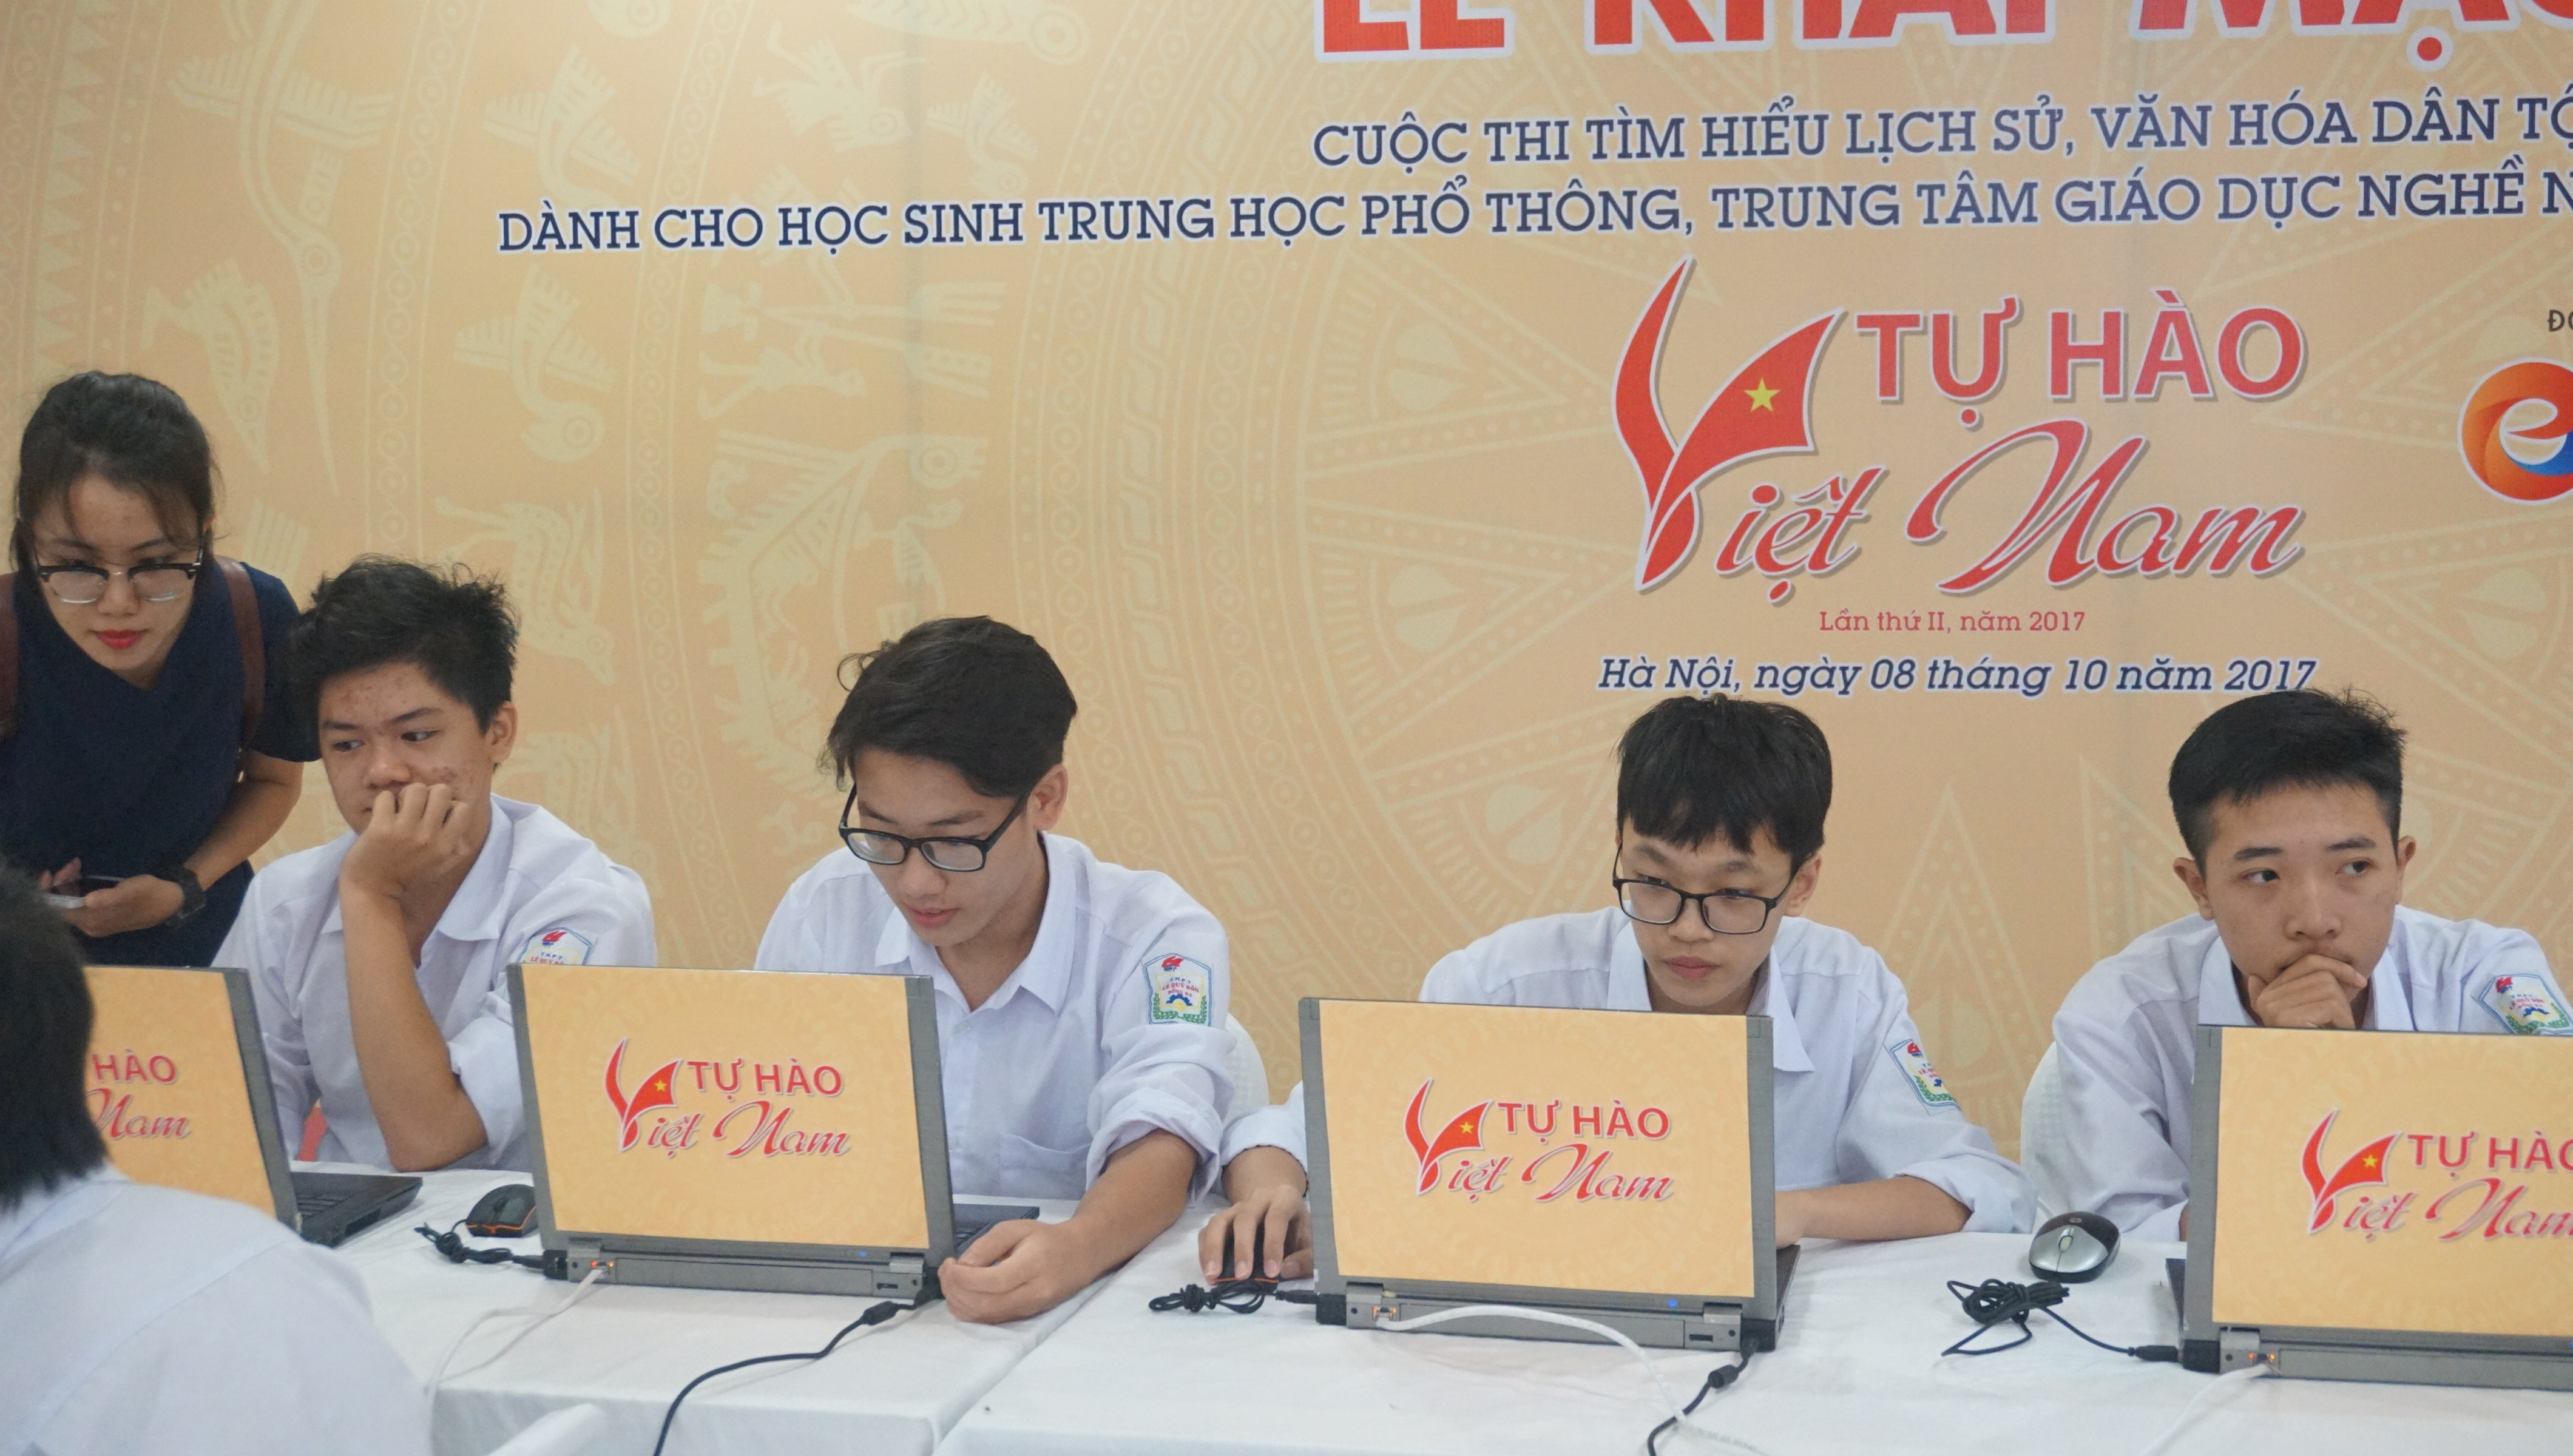 Những thí sinh đầu tiên chính thức tham dự cuộc thi trực tuyến "Tự hào Việt Nam"